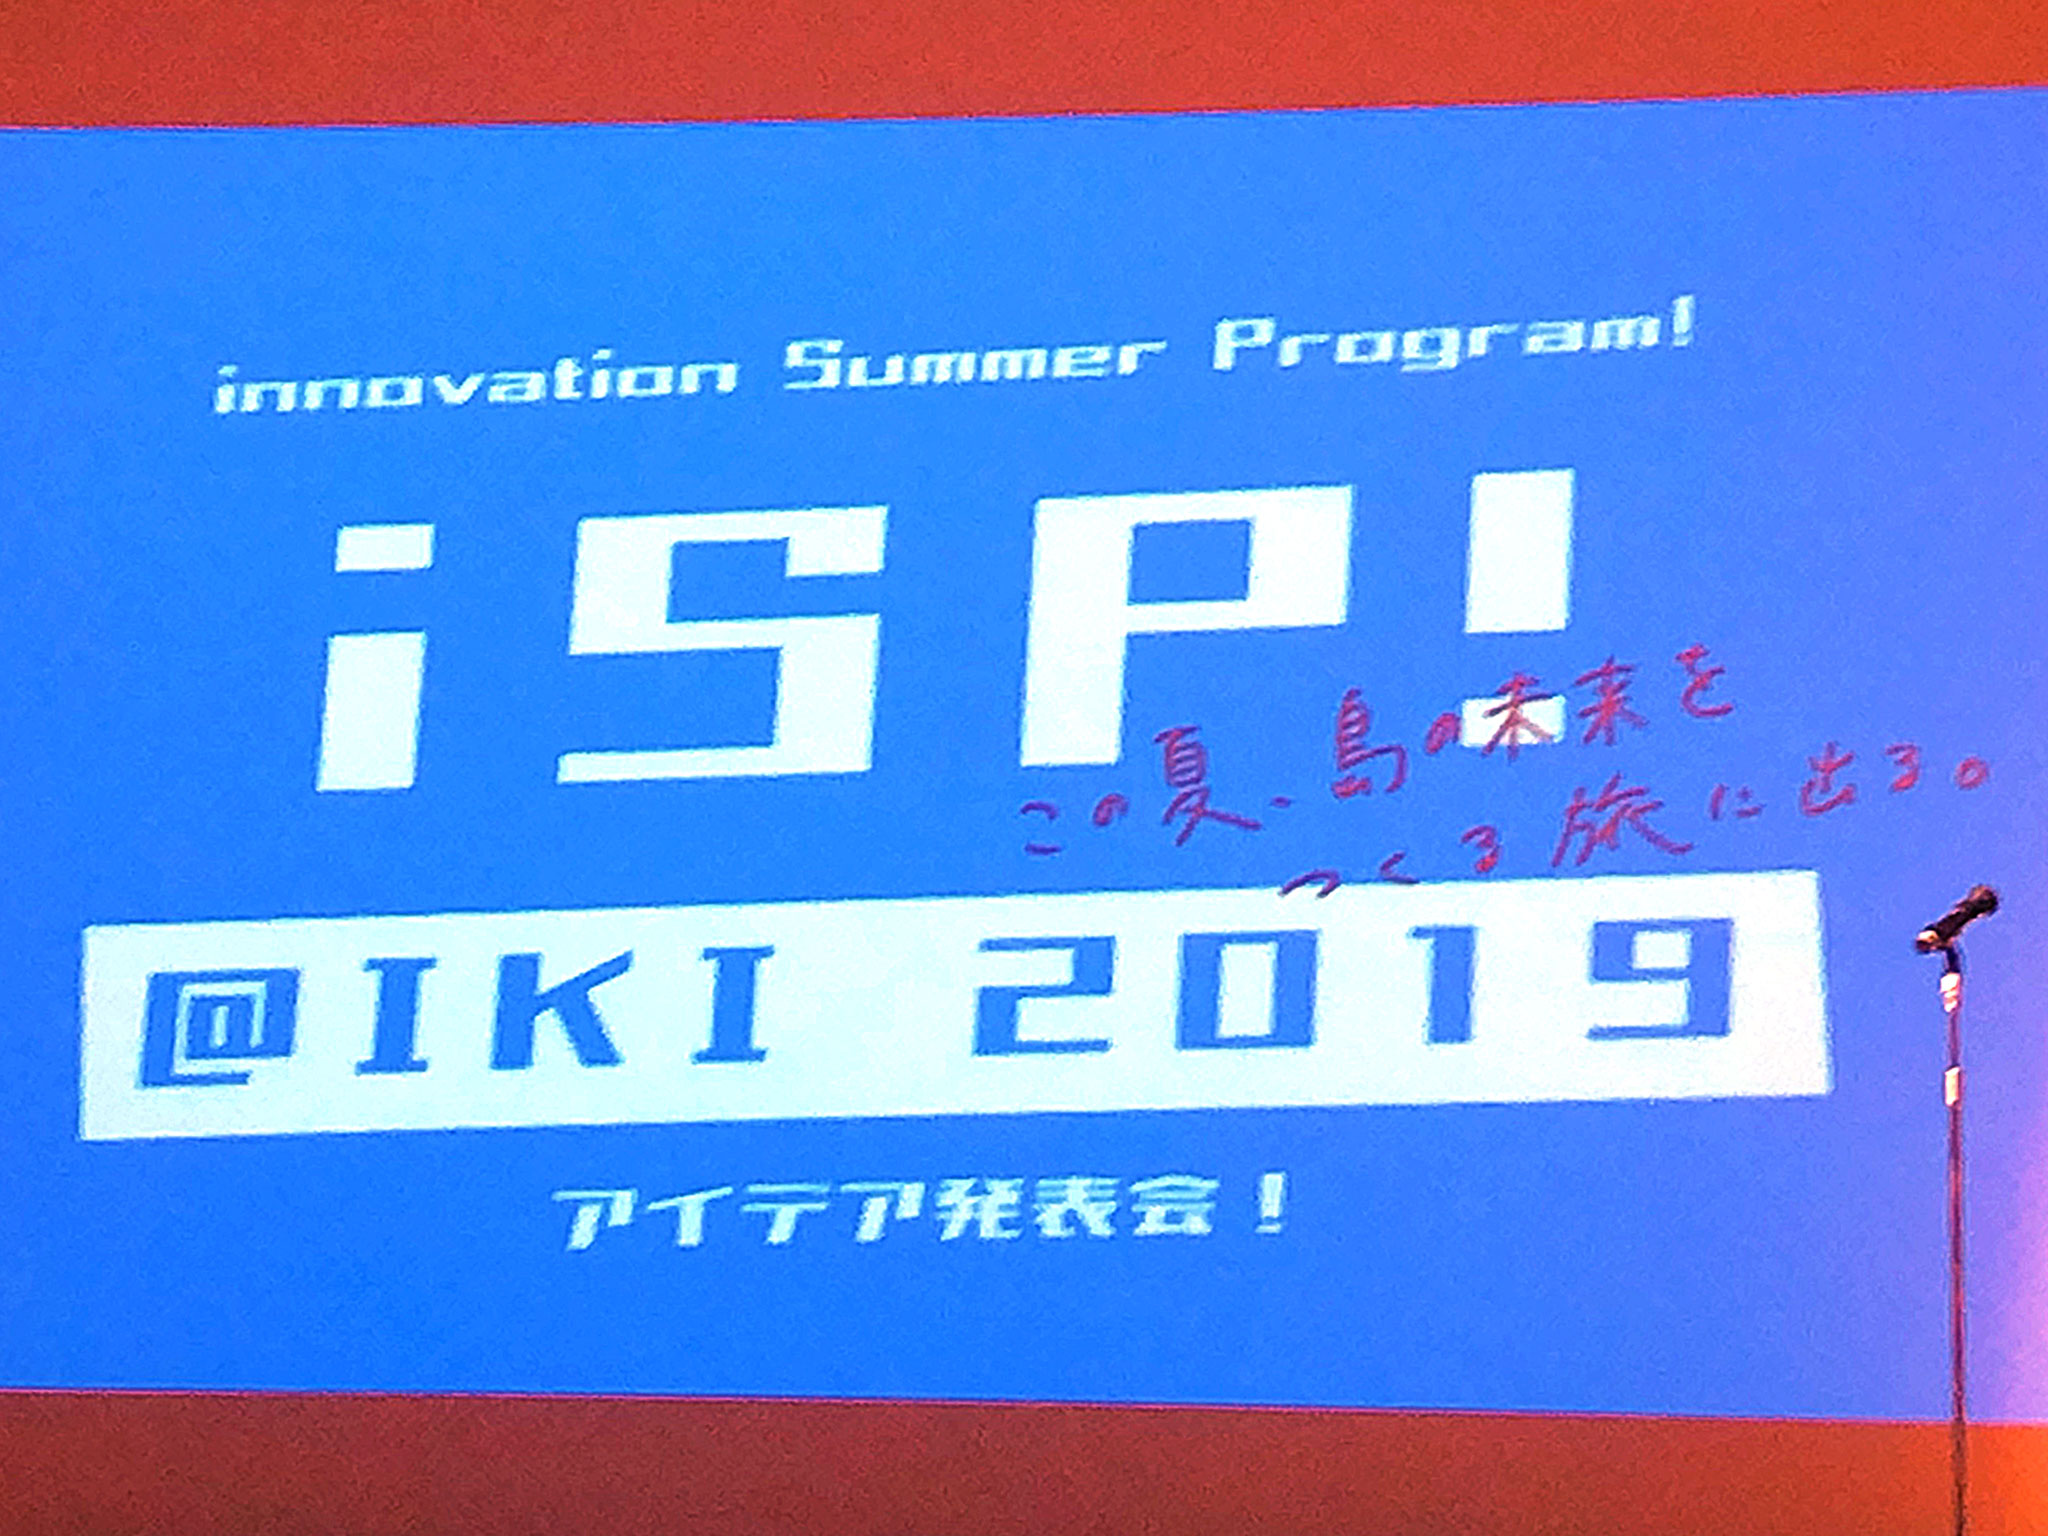 壱岐 i.club Summer Program! 2019 タイトル